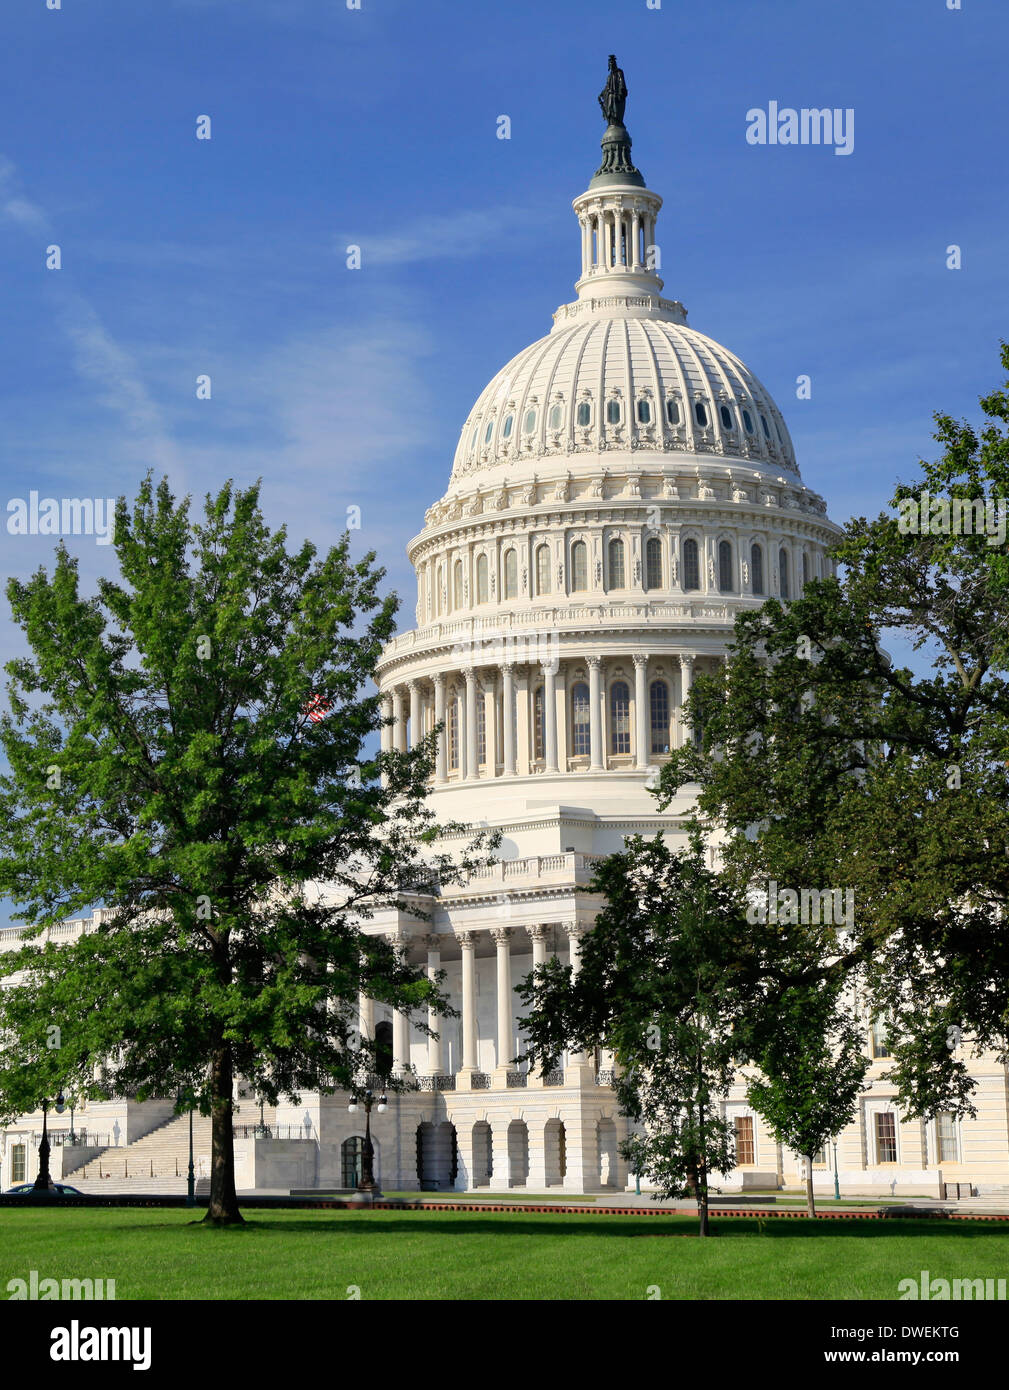 United States Capitol, Washington DC Stock Photo